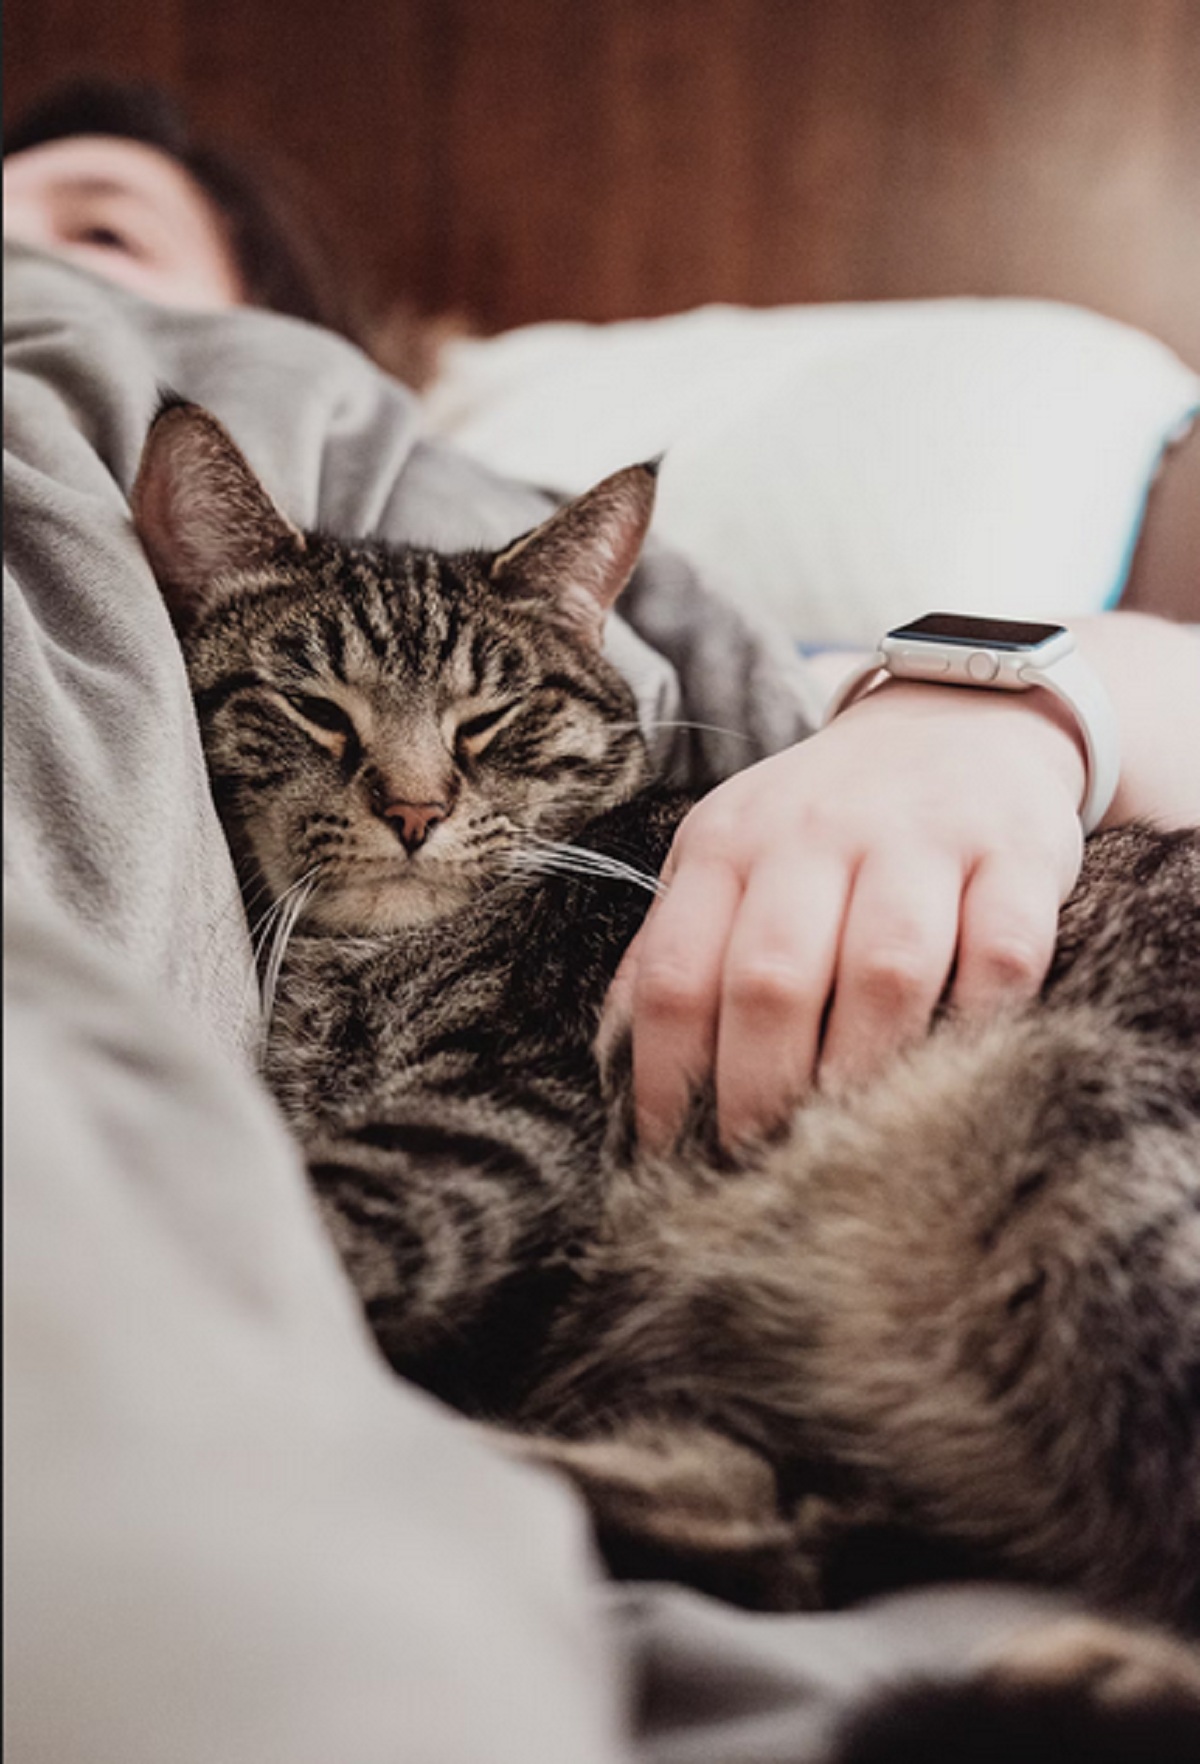 Apakah Benar Tidur Bersama Kucing Dapat Bermanfaat? Yuk Simak 5 Manfaatnya Disini